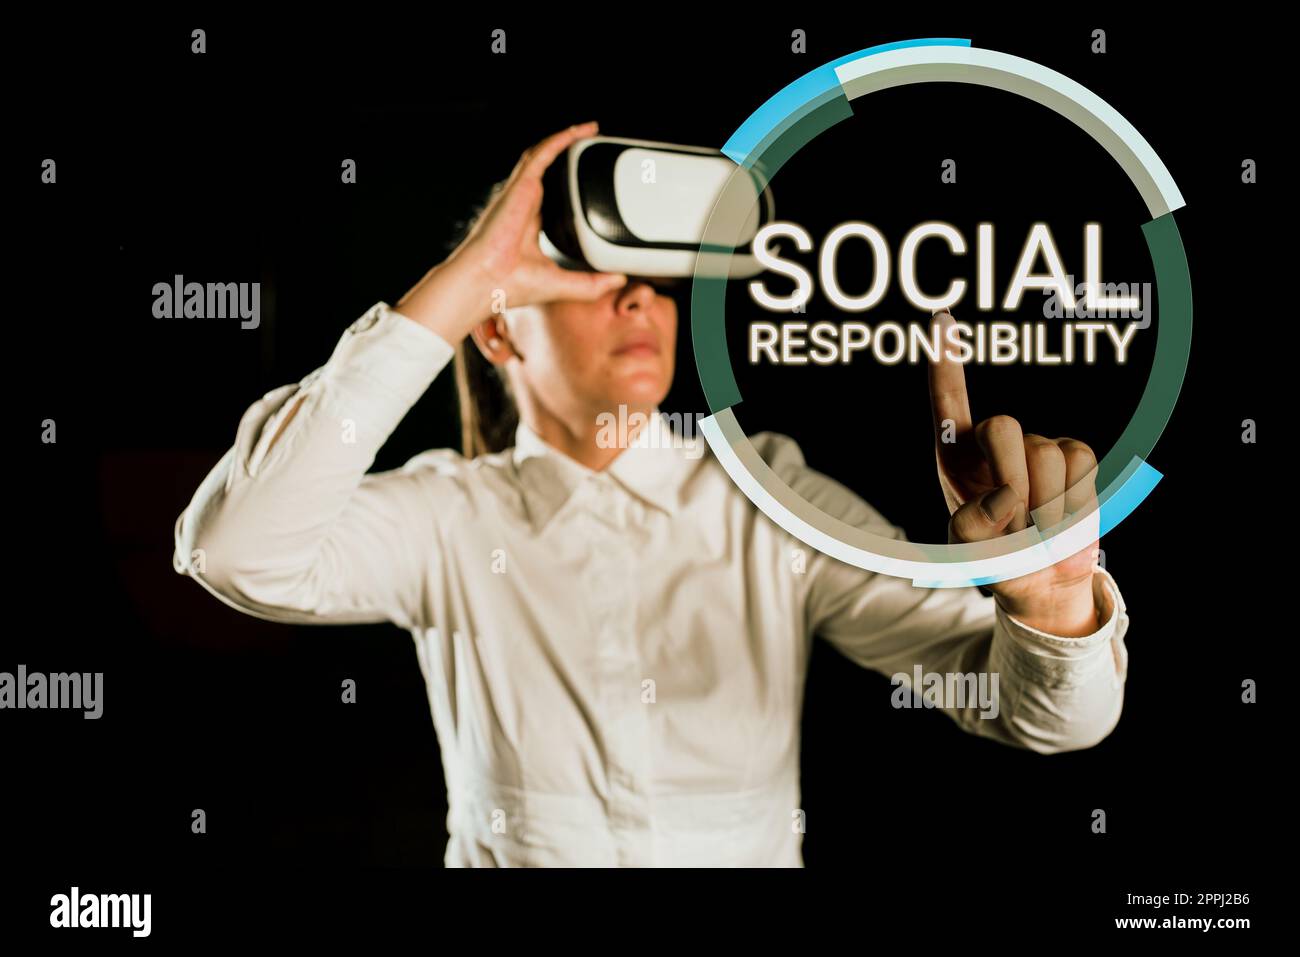 Visualizzazione concettuale responsabilità sociale. Panoramica delle imprese obbligo a beneficio dell'equilibrio della società nella vita Foto Stock